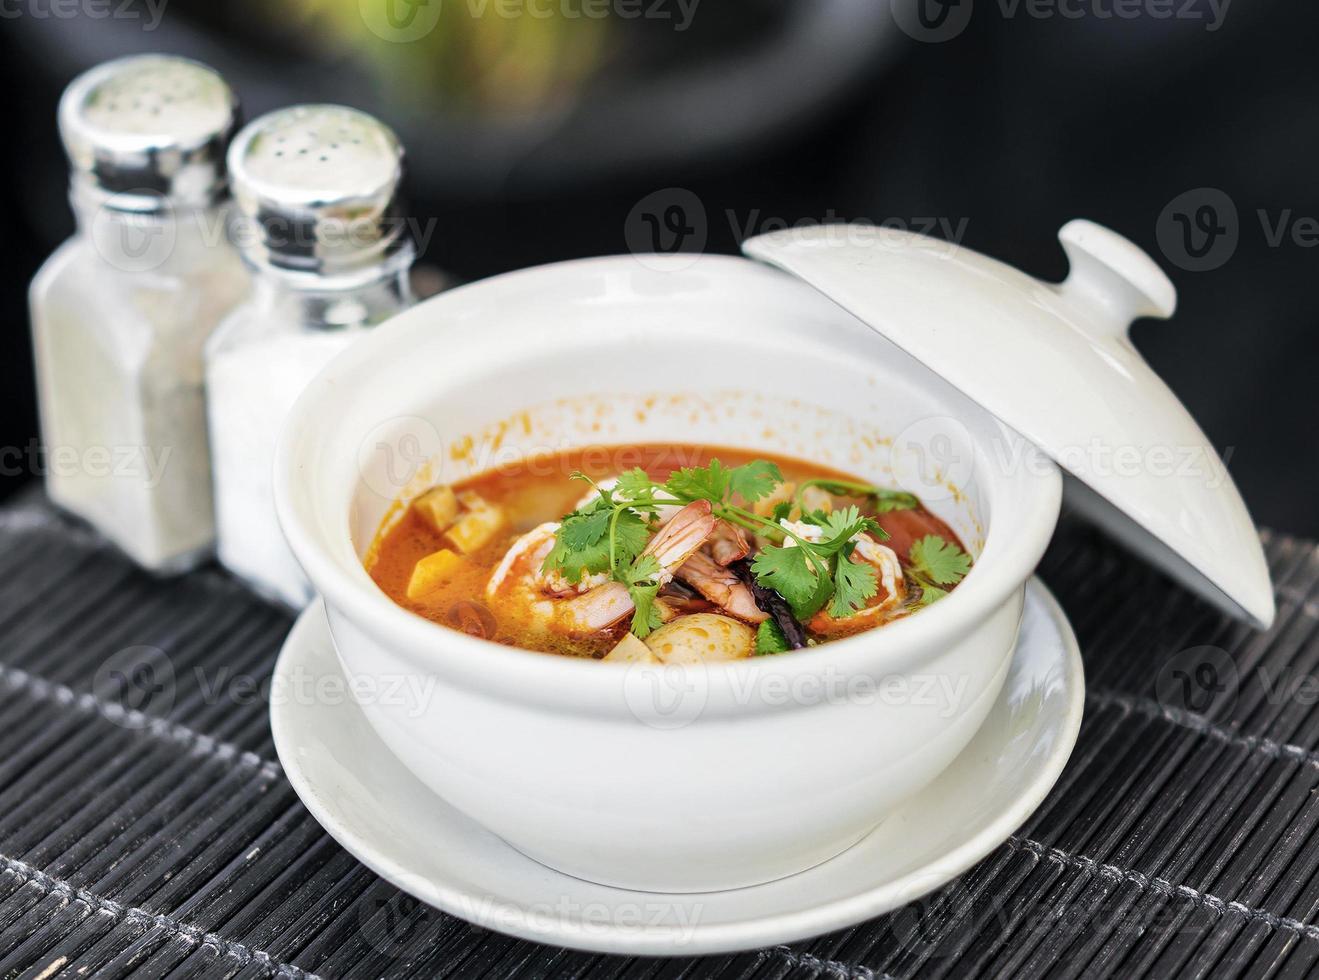 zuppa di pesce fresco asiatico al curry rosso piccante a phu quoc vietnam foto